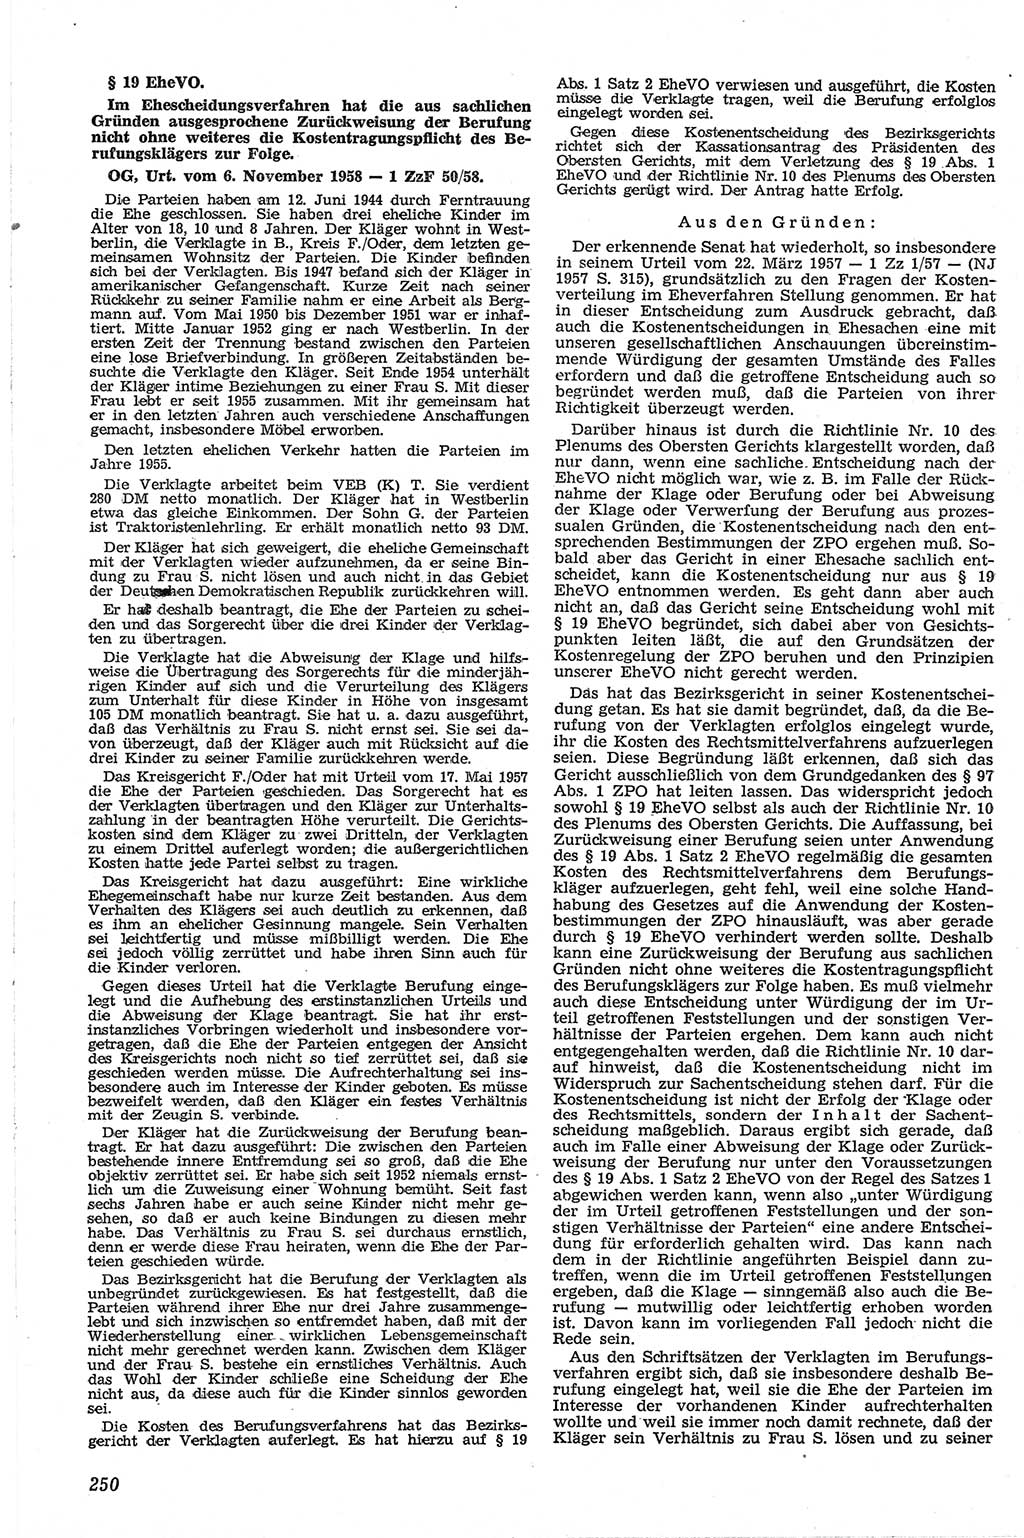 Neue Justiz (NJ), Zeitschrift für Recht und Rechtswissenschaft [Deutsche Demokratische Republik (DDR)], 13. Jahrgang 1959, Seite 250 (NJ DDR 1959, S. 250)